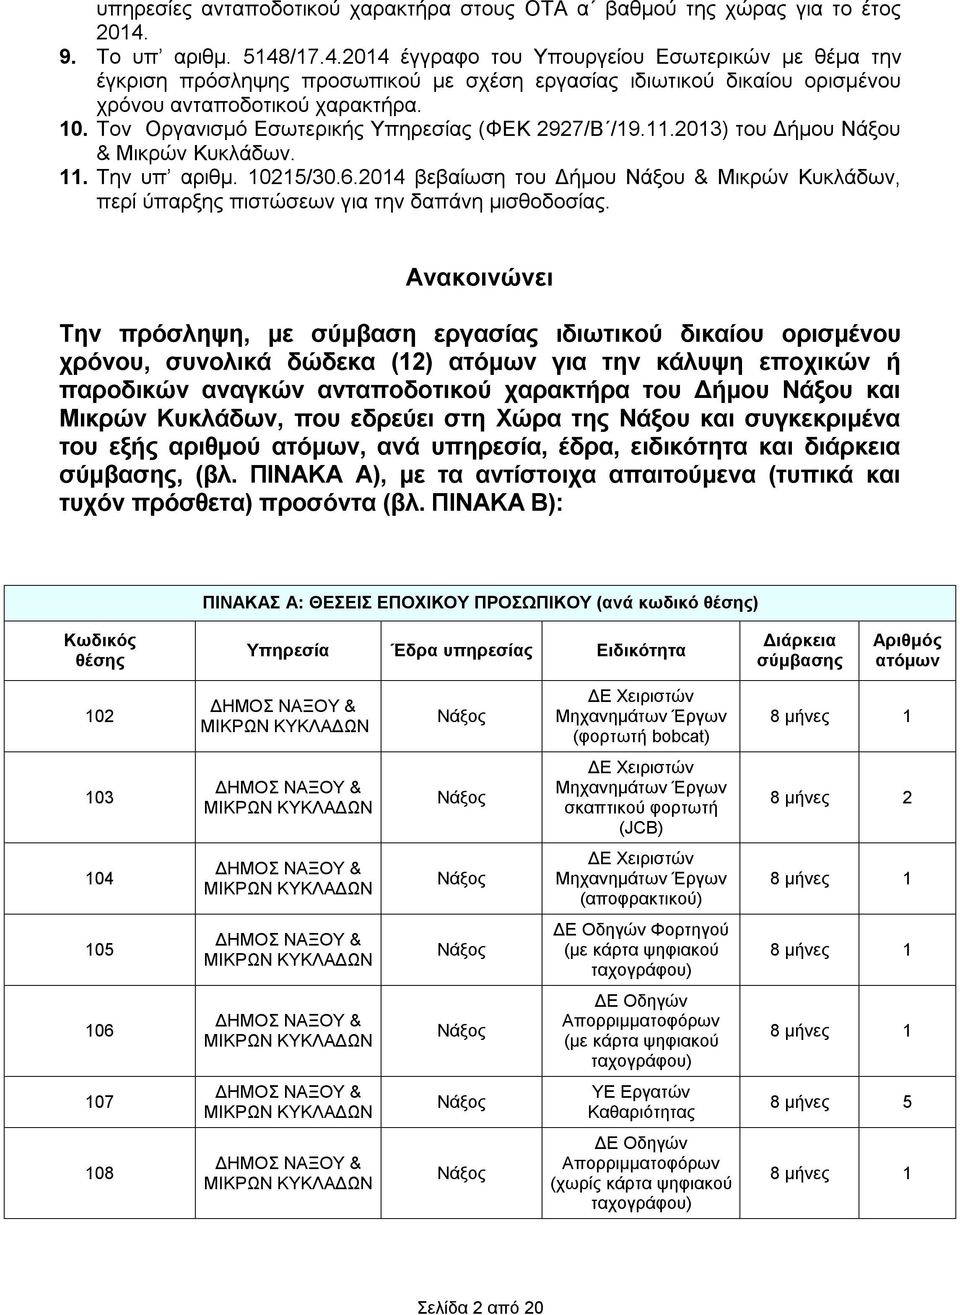 Τον Οργανισμό Εσωτερικής Υπηρεσίας (ΦΕΚ 2927/Β /19.11.2013) του Δήμου Νάξου & Μικρών Κυκλάδων. 11. Την υπ αριθμ. 10215/30.6.